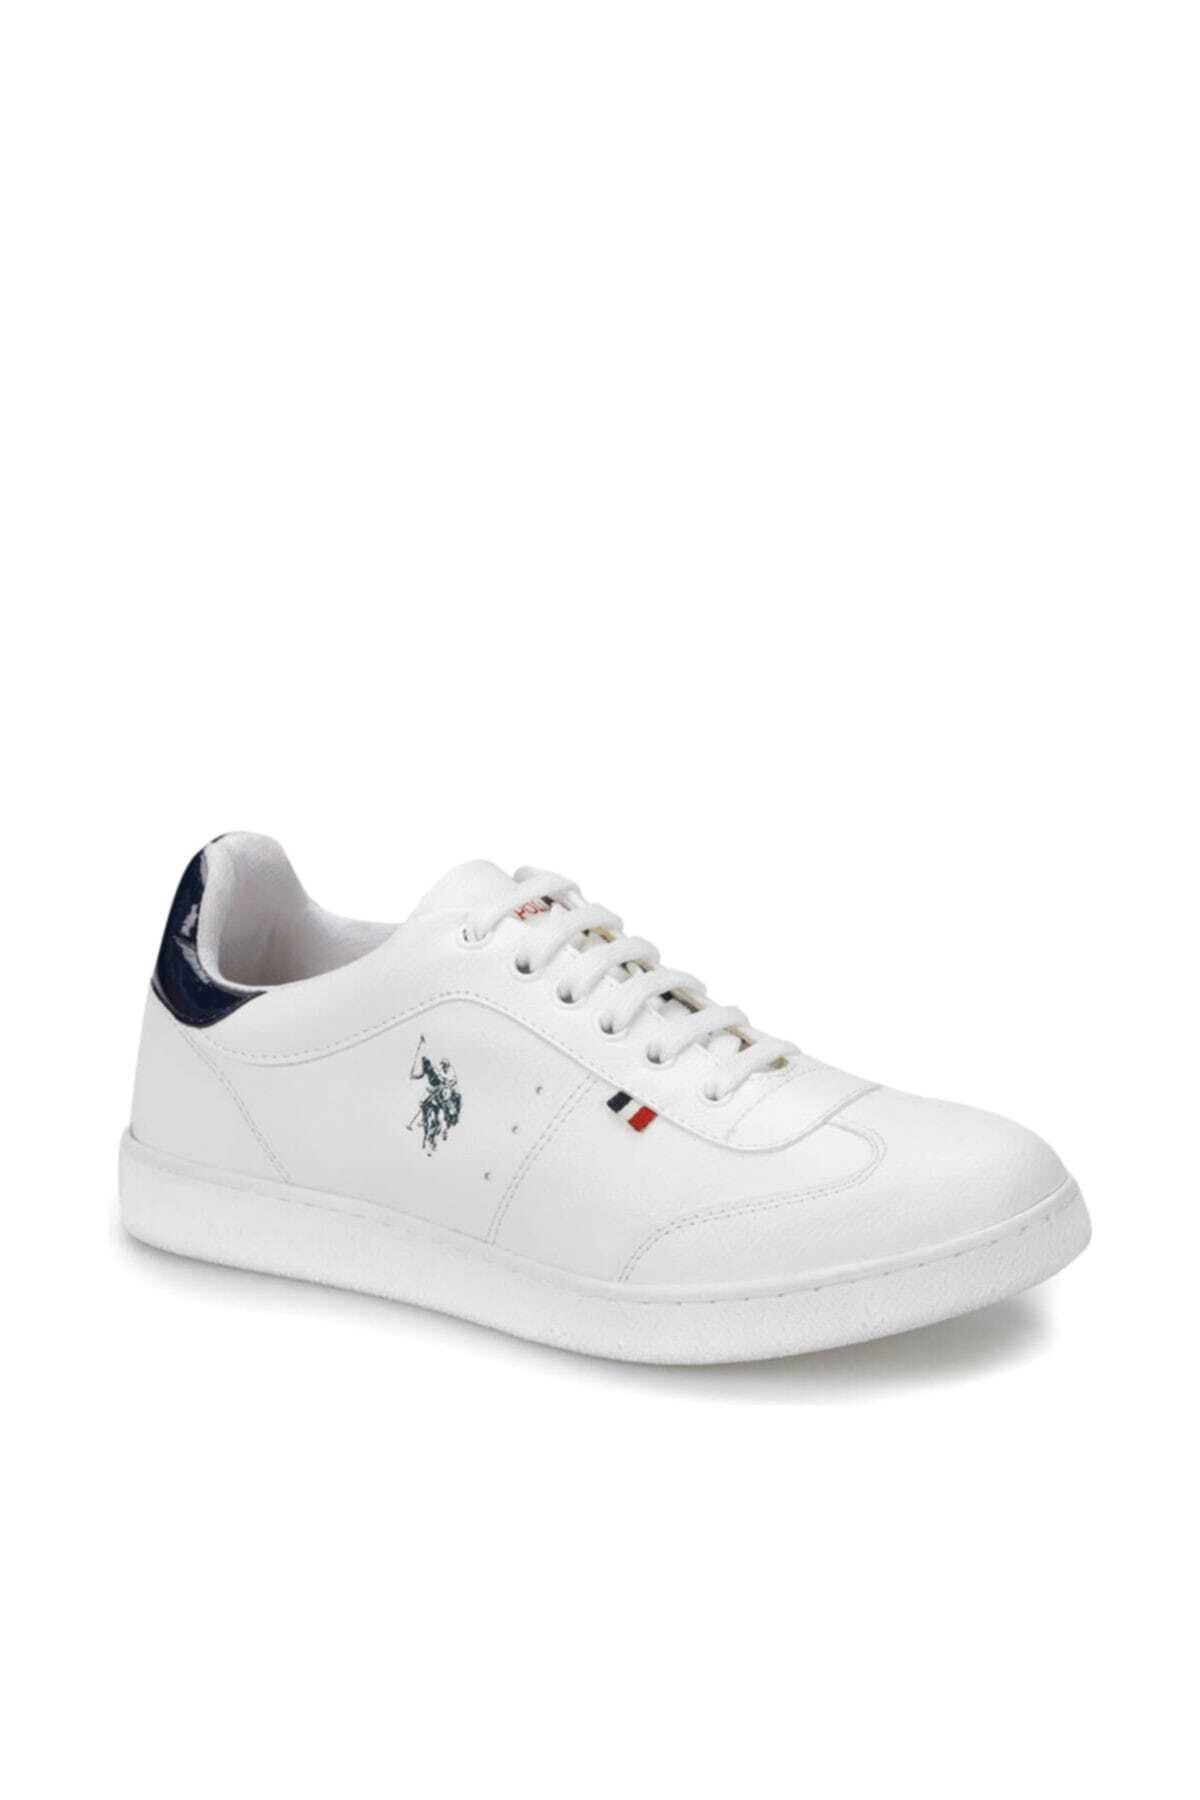 U.S. Polo Assn. SOMMER Beyaz Kadın Sneaker Ayakkabı 100301241